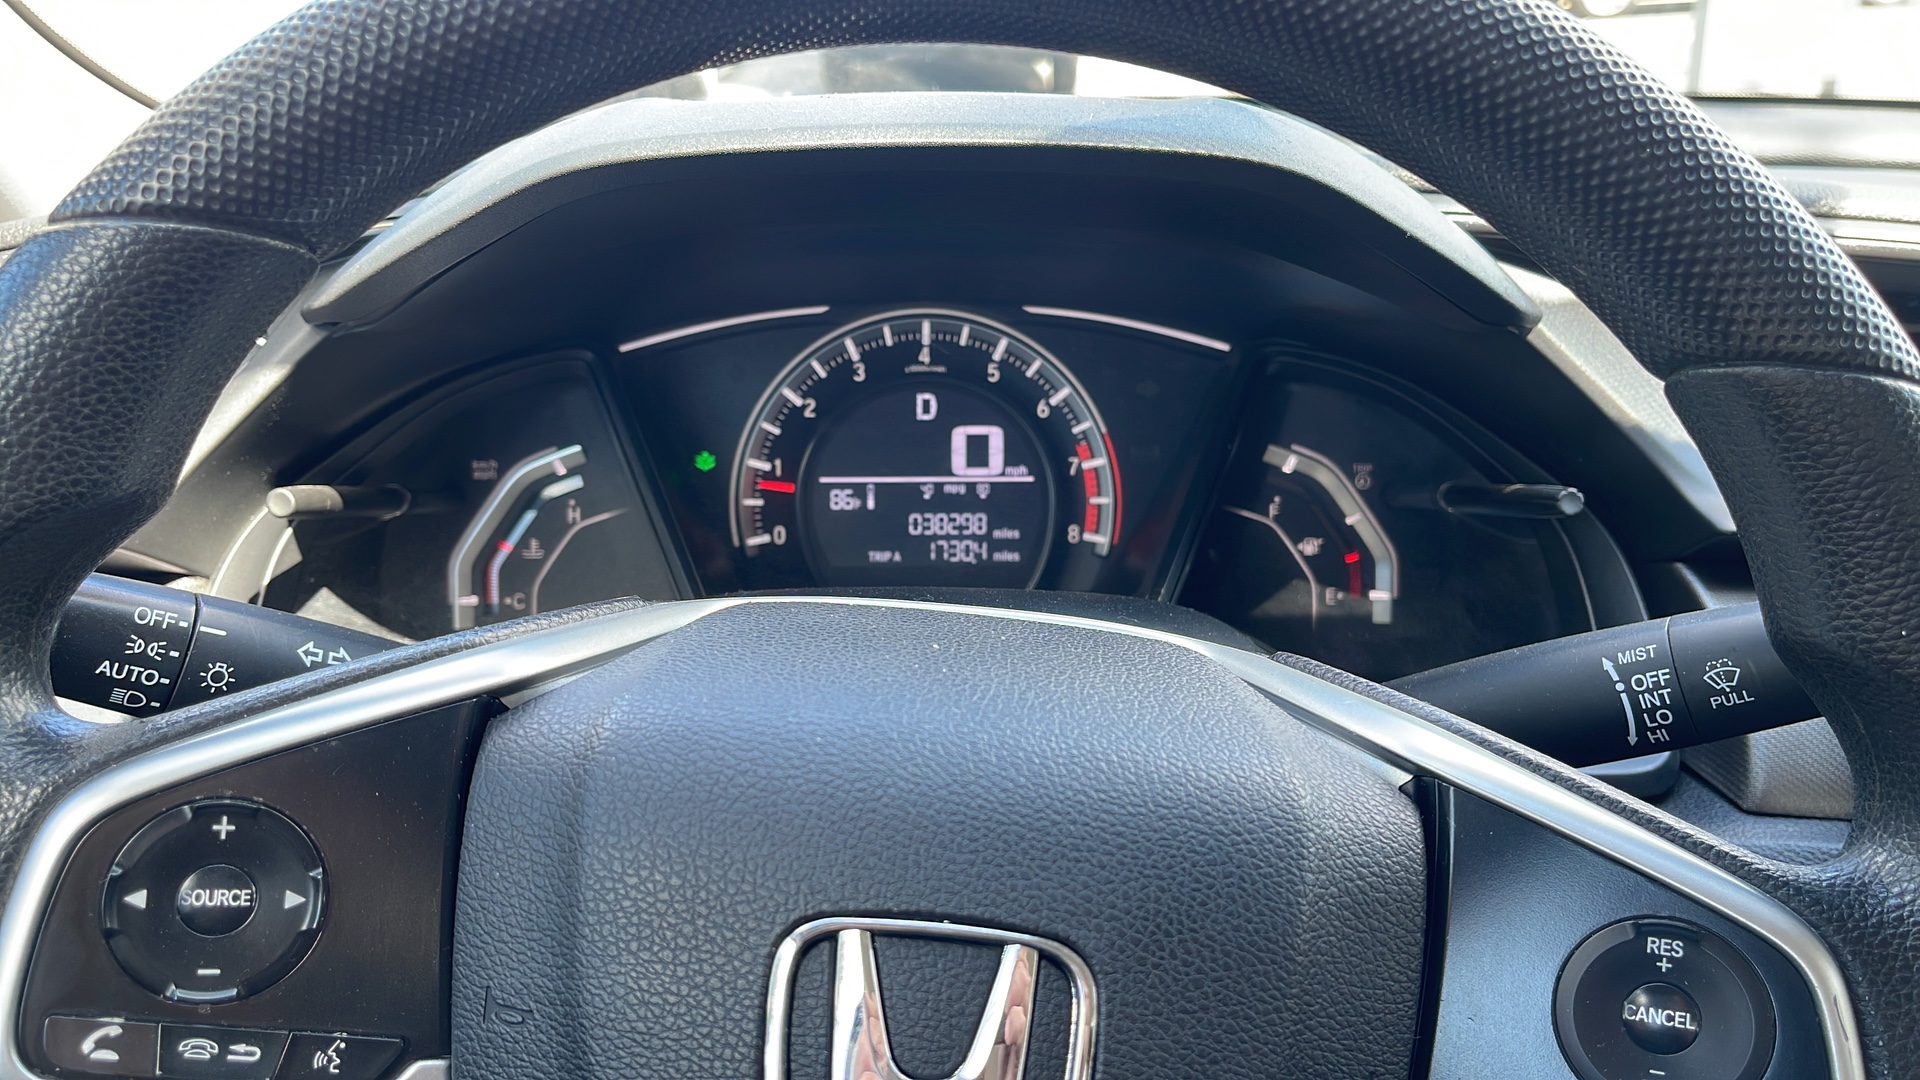 carros - Honda Civic 2018 LX 870,000 importado 38 mil millas en Santiago  6